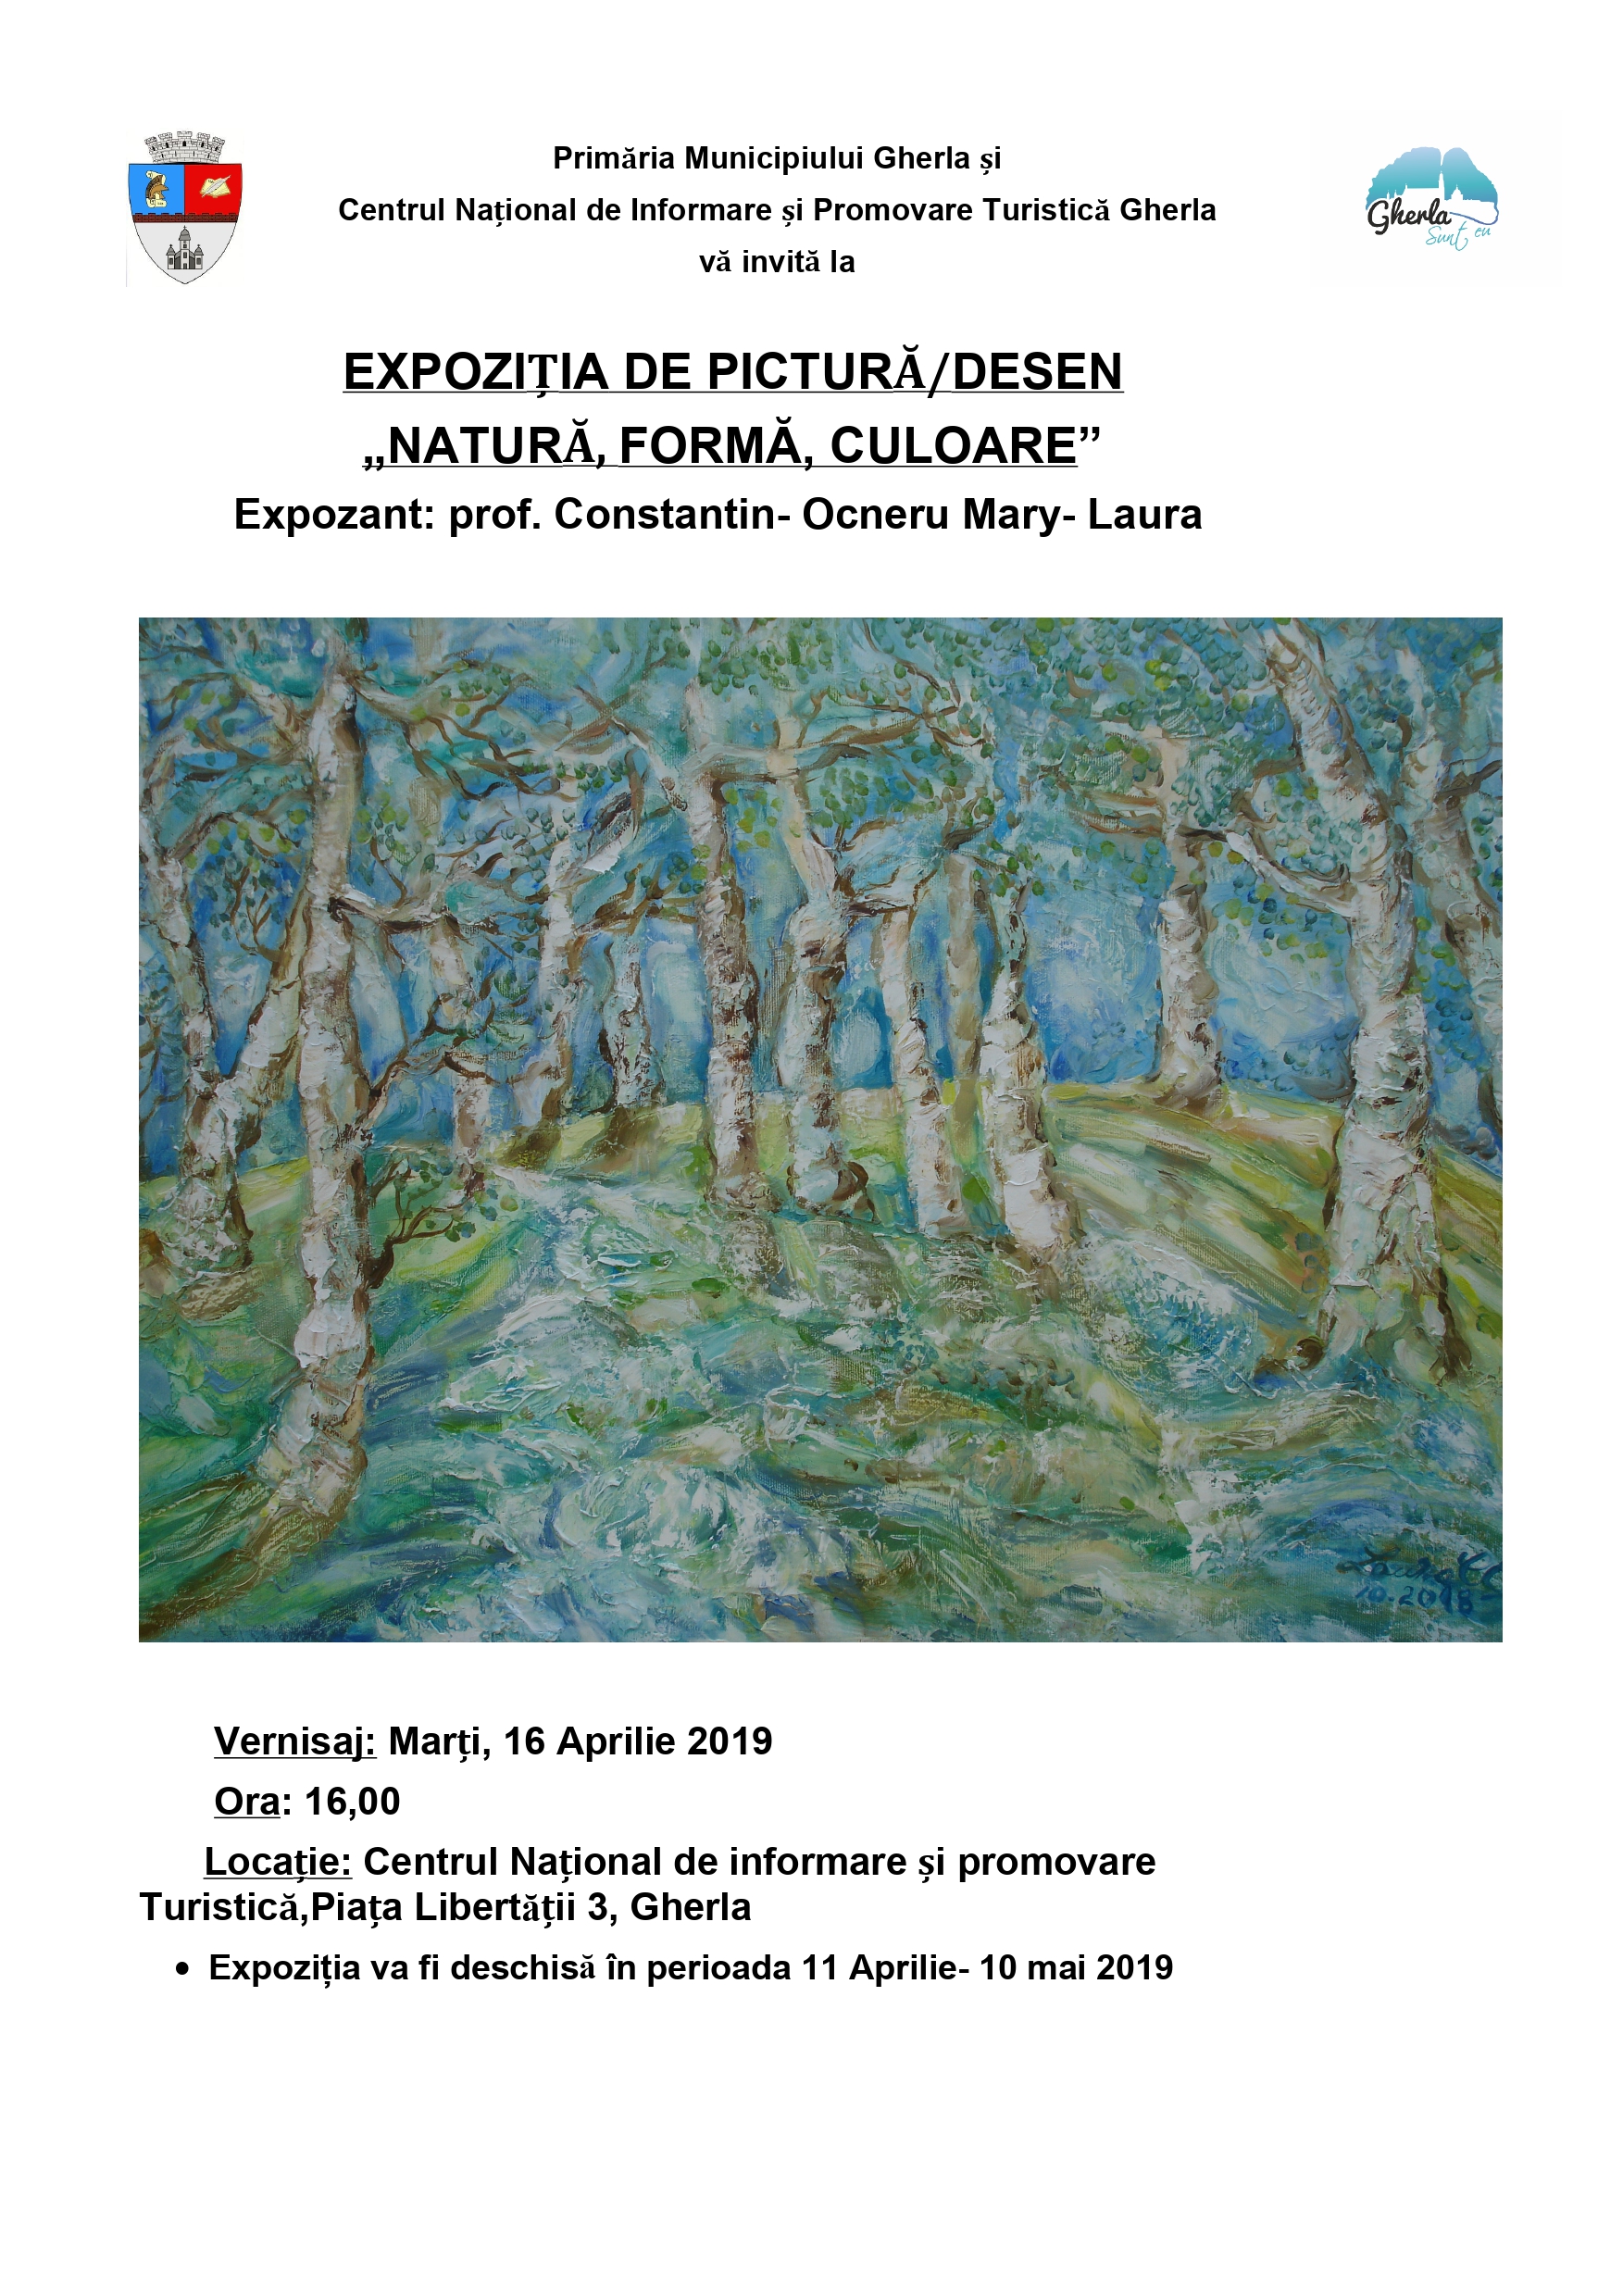 Expoziția de pictură/desen ,, Natură, Formă, Culoare " expozant  Constantin-Ocneru -Laura